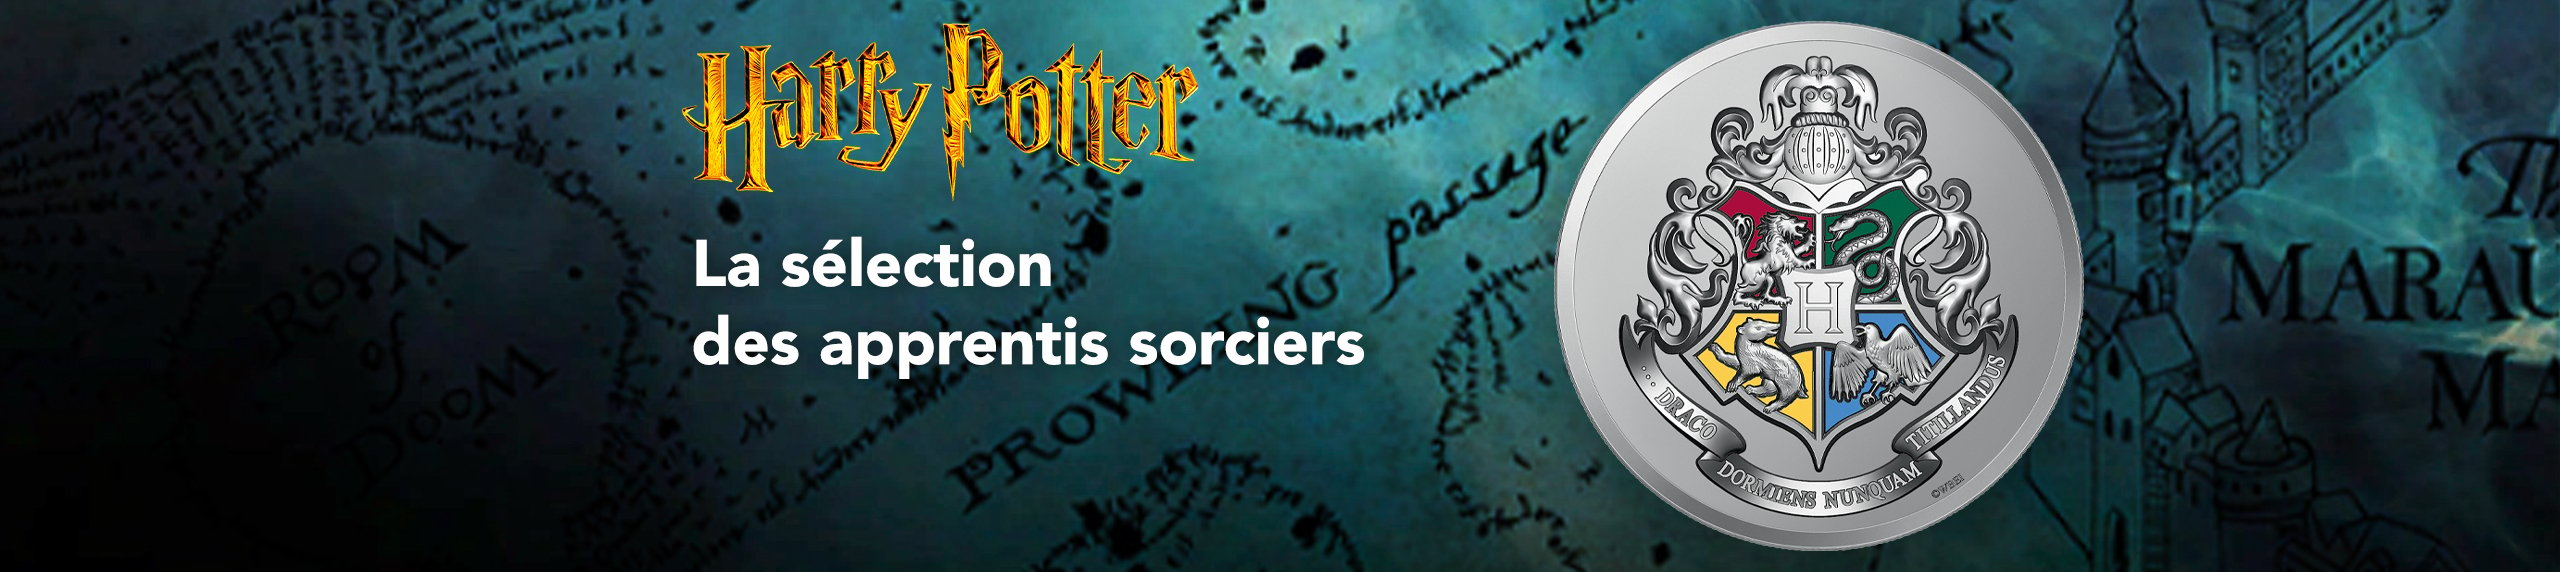 Figurine à collectionner Wizarding World Magical Minis Harry Potter, choix  varié, 3 po, 5 ans et plus